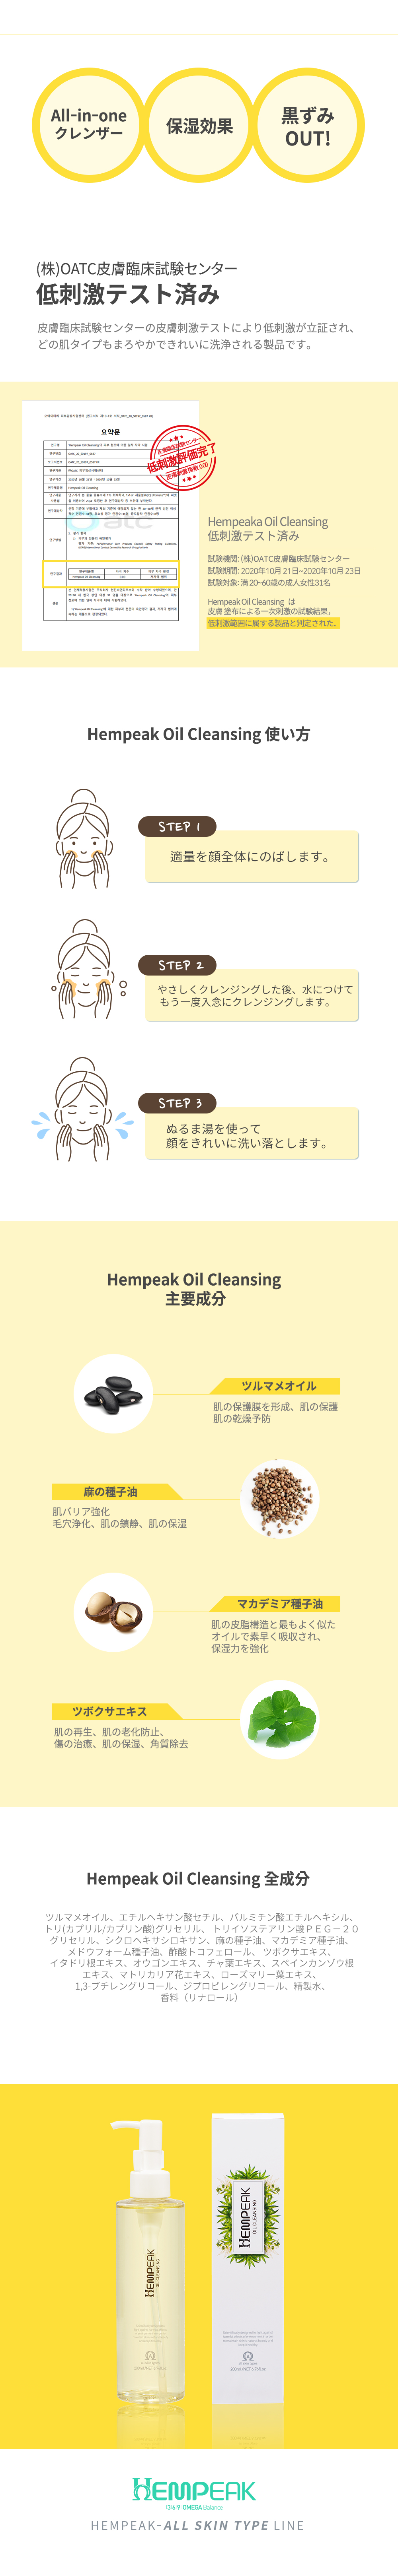 hempeak_oilcleansing_sanG_j07.jpg